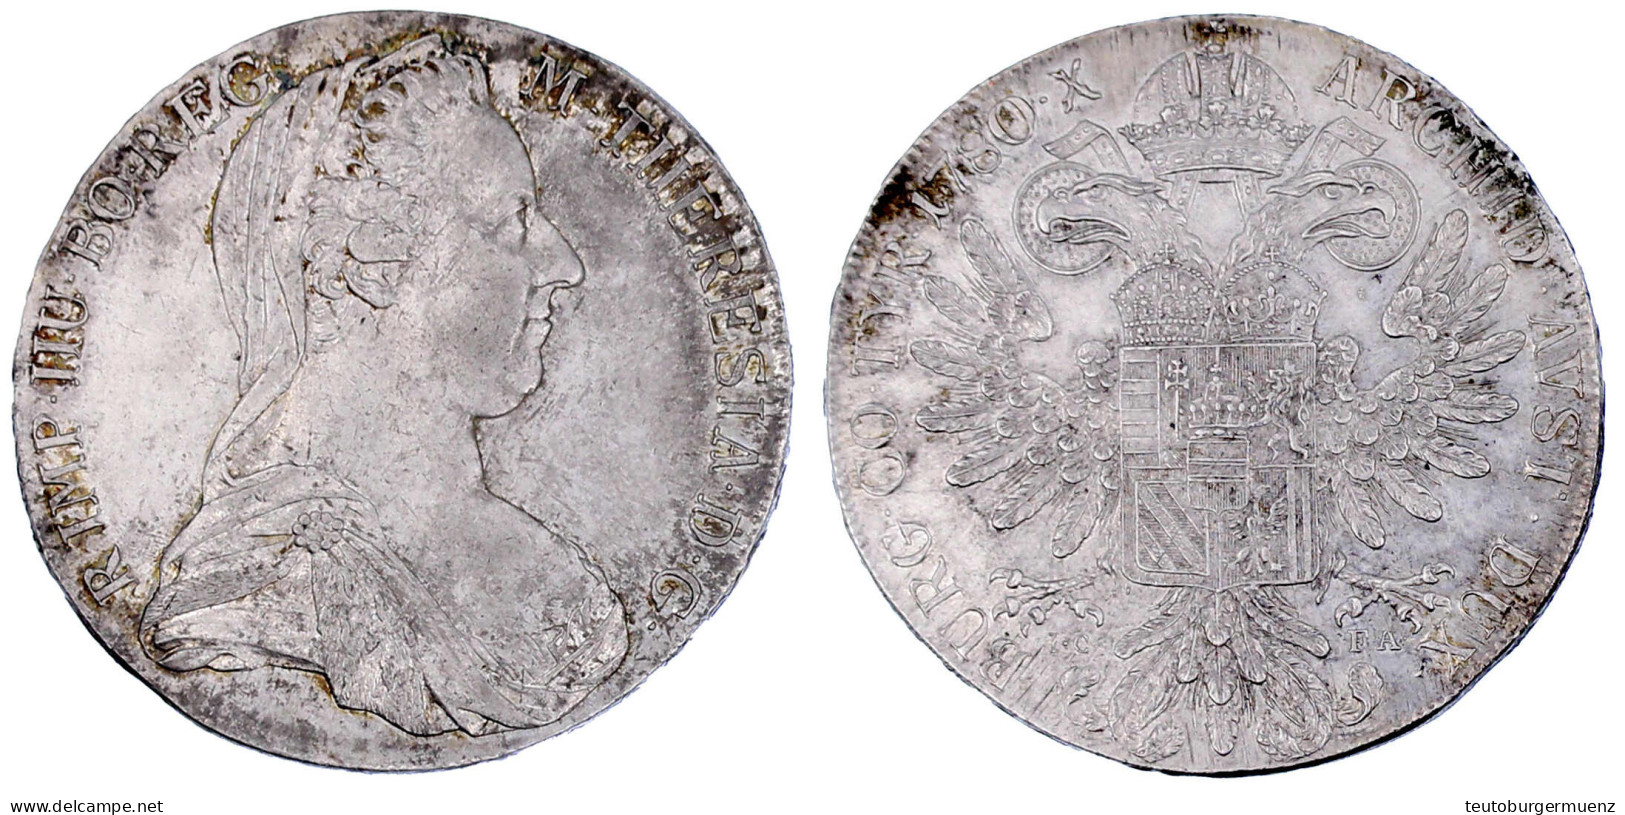 Maria-Theresien-Taler 1780 ICFA Nachprägung Wien 1795-1803. Vorzüglich. Hafner 17. - Gold Coins